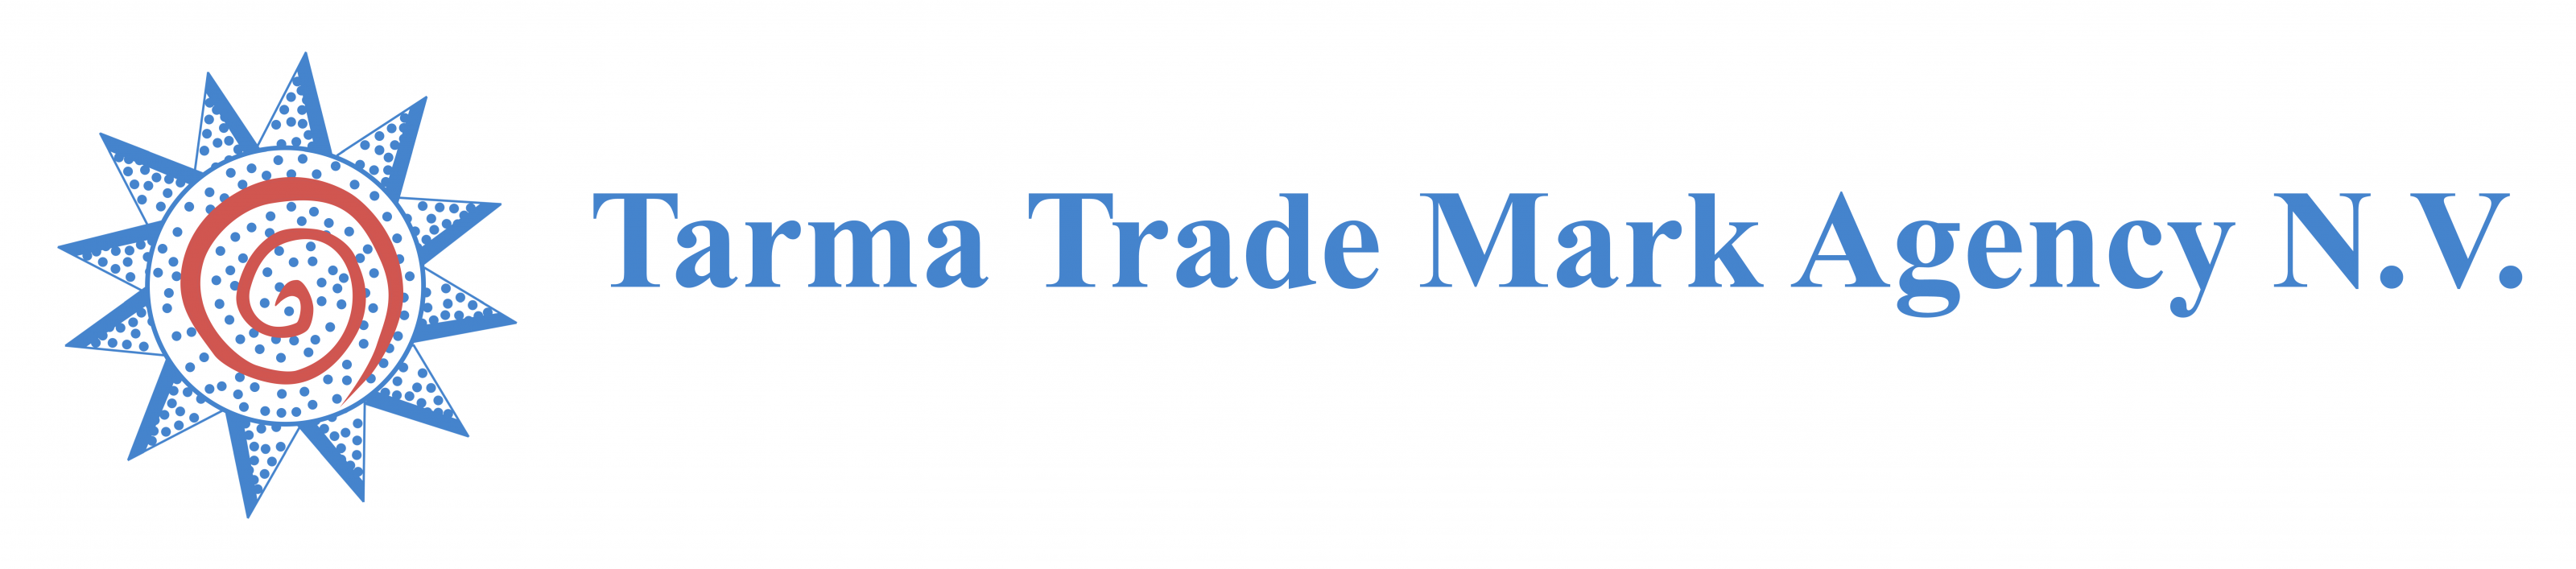 Trama Trade Mark Agency